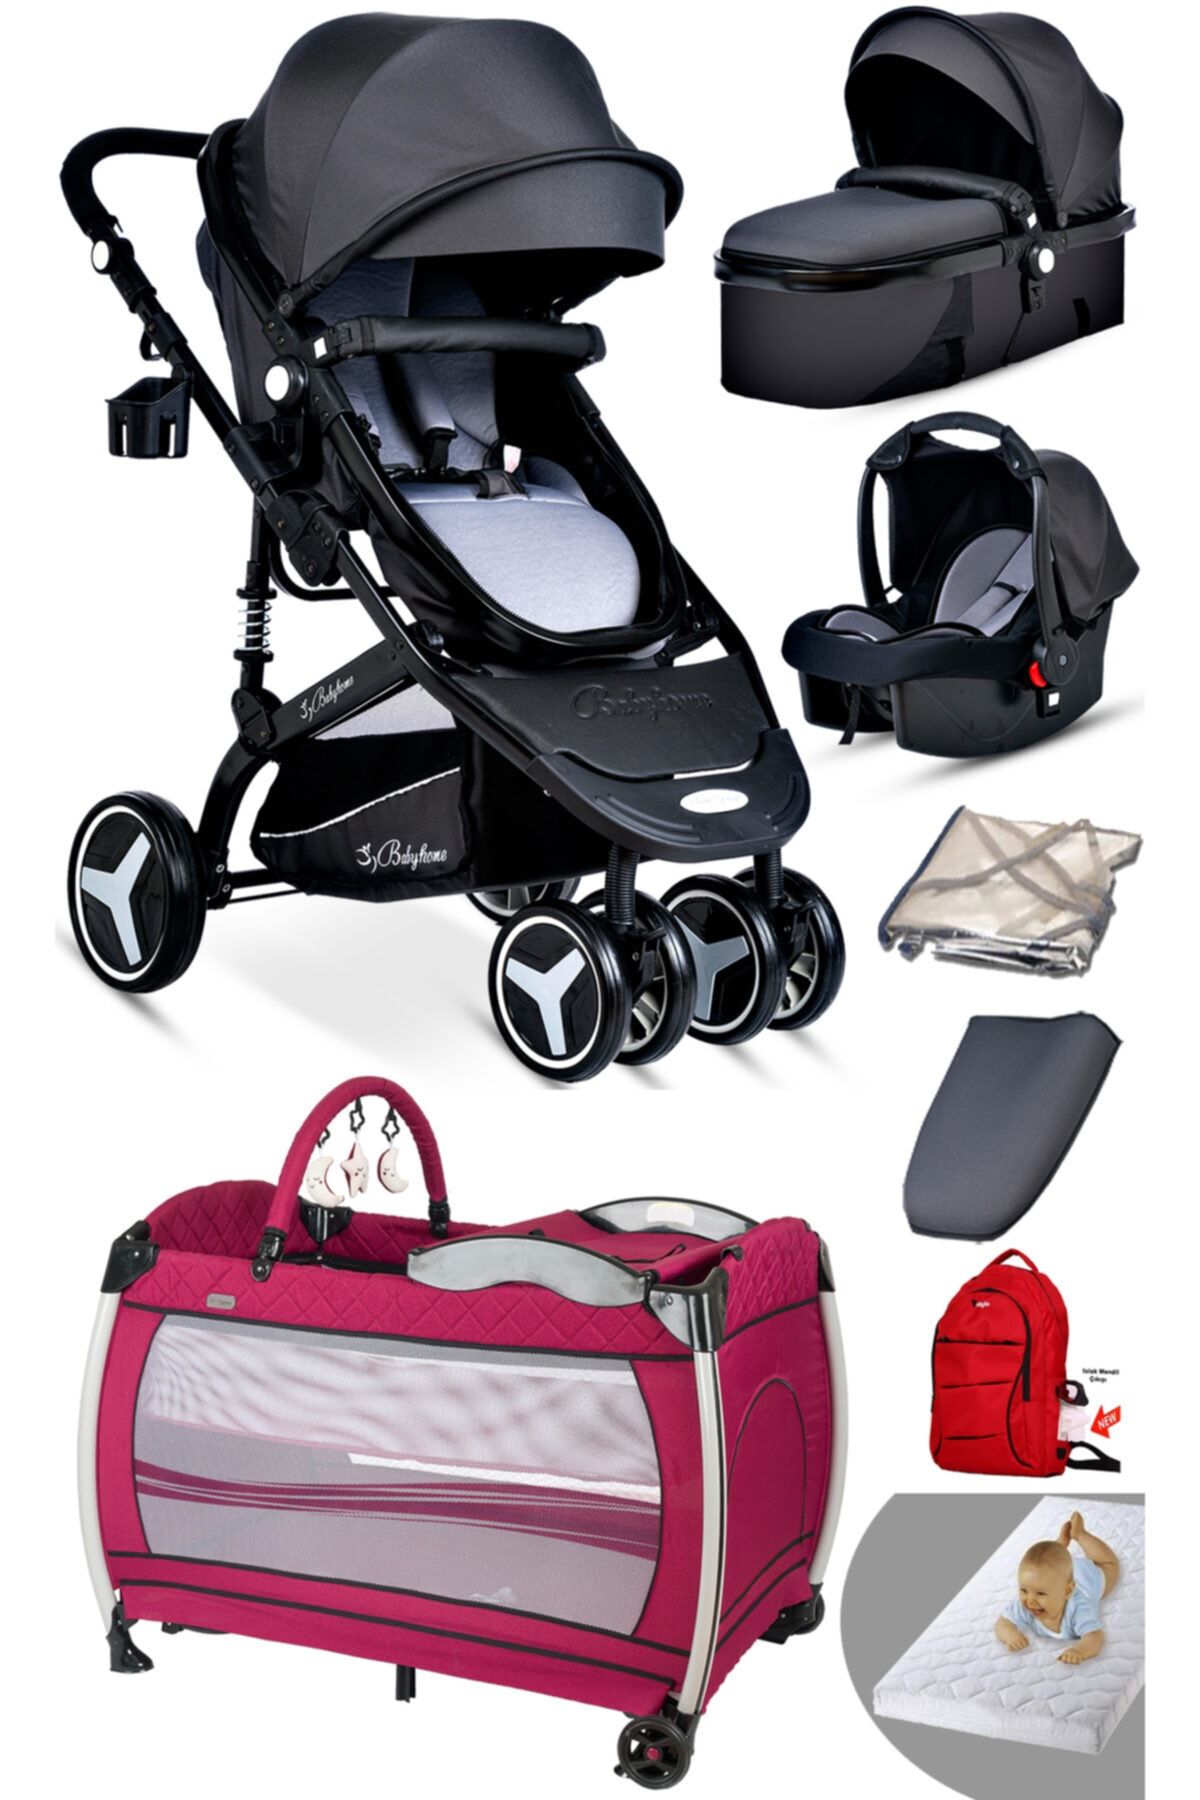 Baby Home 945 Travel Yeni Doğan 8'in1 Sistem Bebek Arabası Set Ve 600 Oyun Parkı Beşik Park Yatak